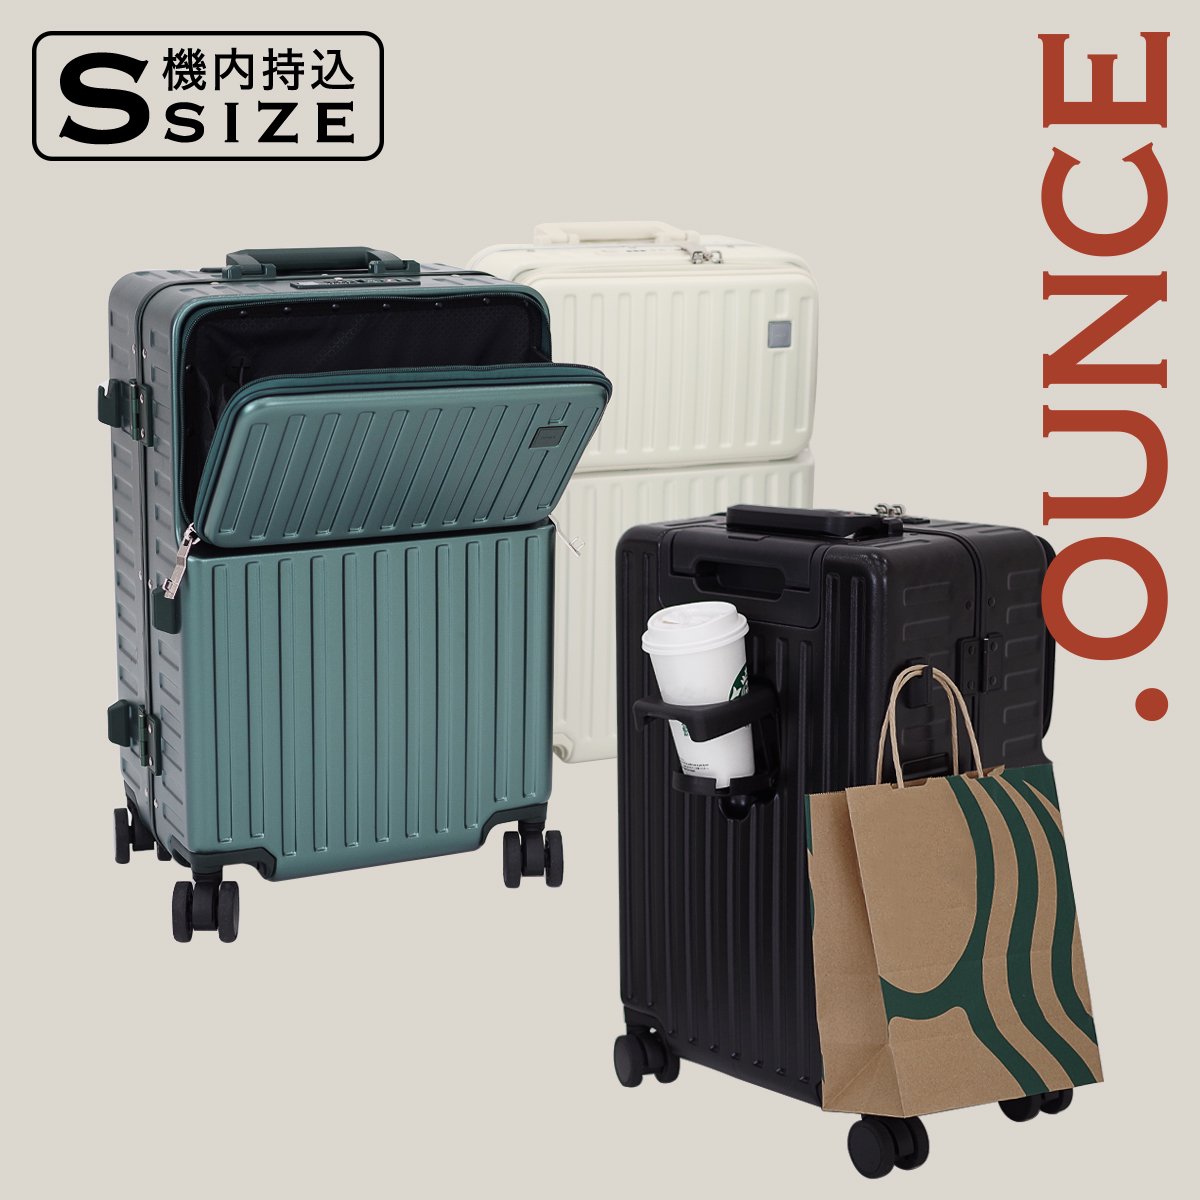 OUNCE 多機能 スーツケース アルミフレーム 機内持ち込み STYLISH 